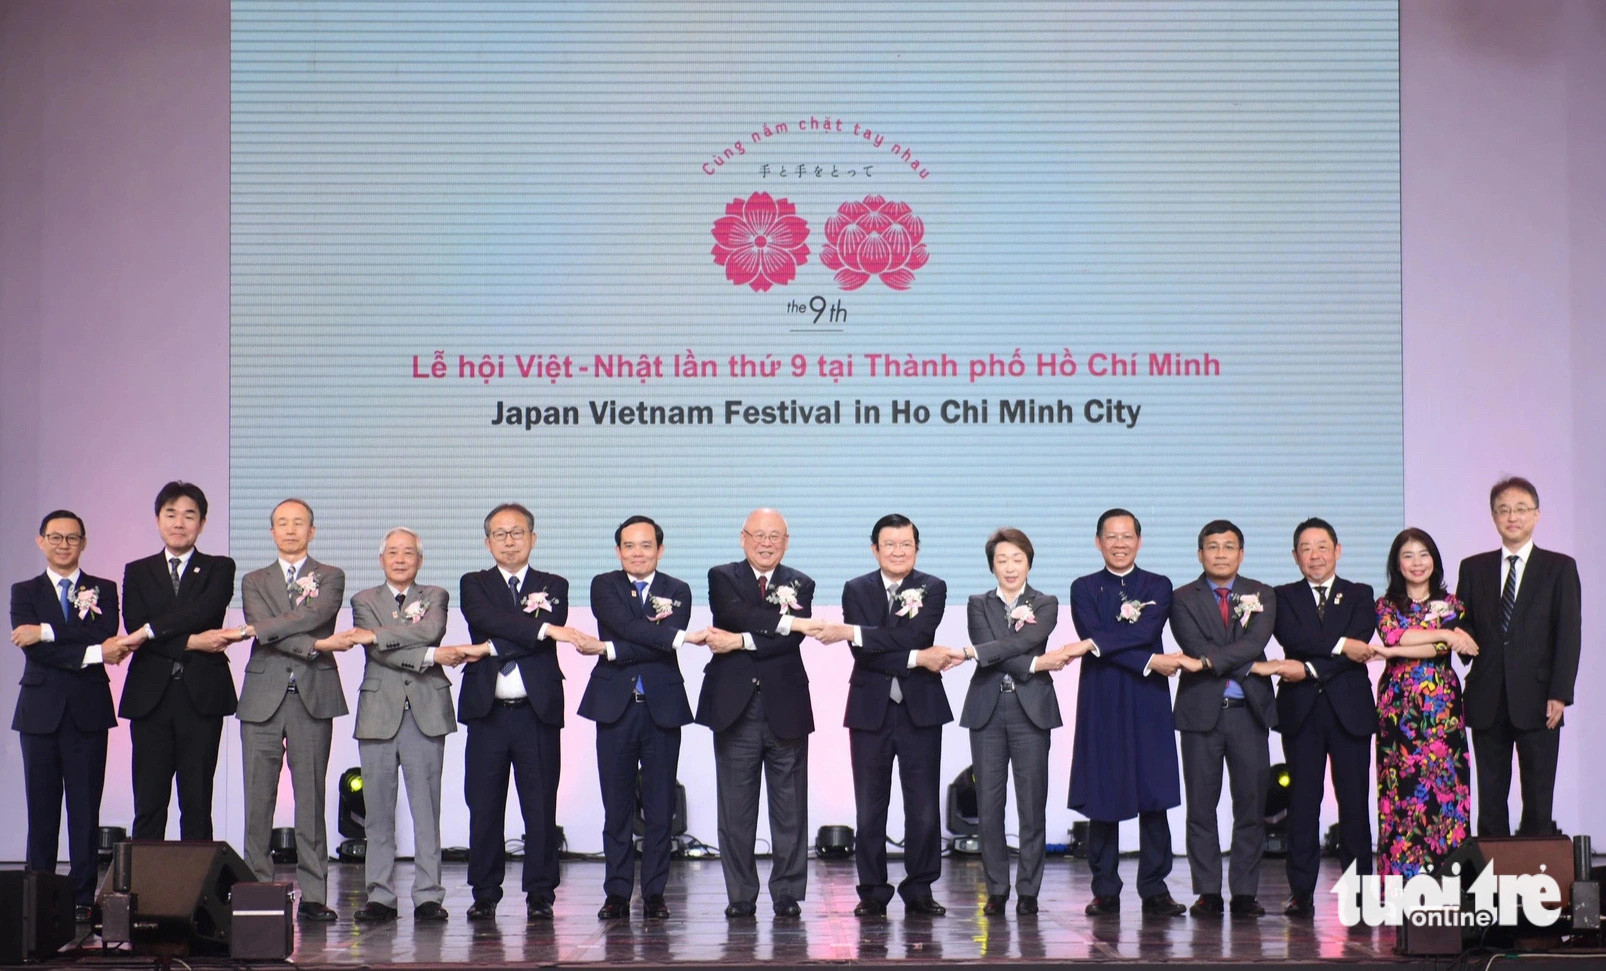 Các đại biểu tham dự khai mạc Lễ hội Việt - Nhật cùng nắm tay thắt chặt tình hữu nghị - Ảnh: QUANG ĐỊNH